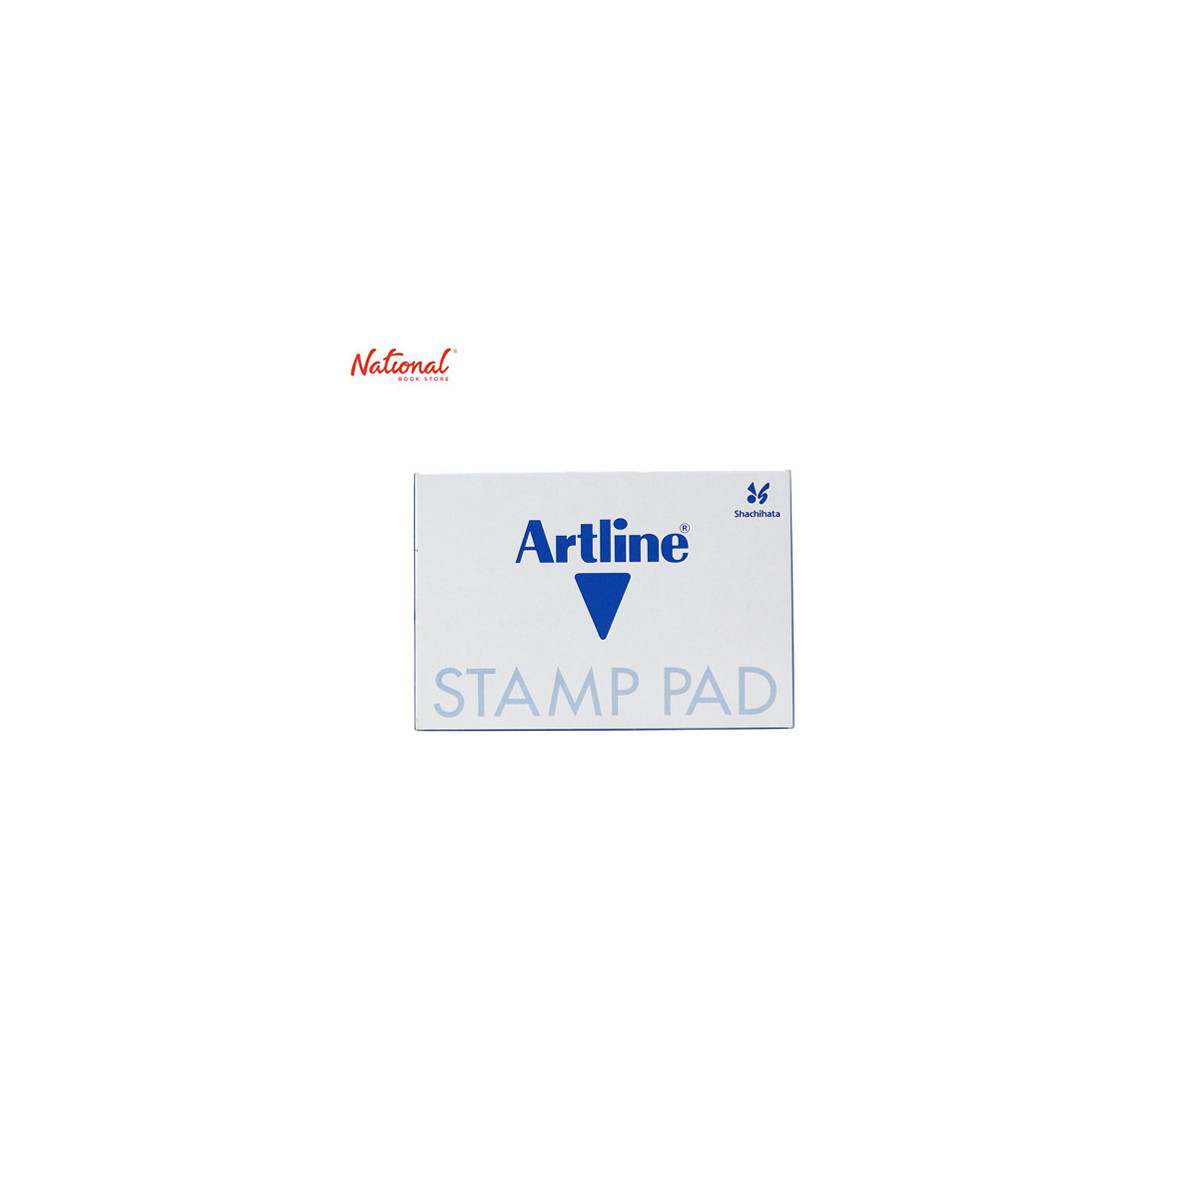 Artline Stamp Pad 1, Blue